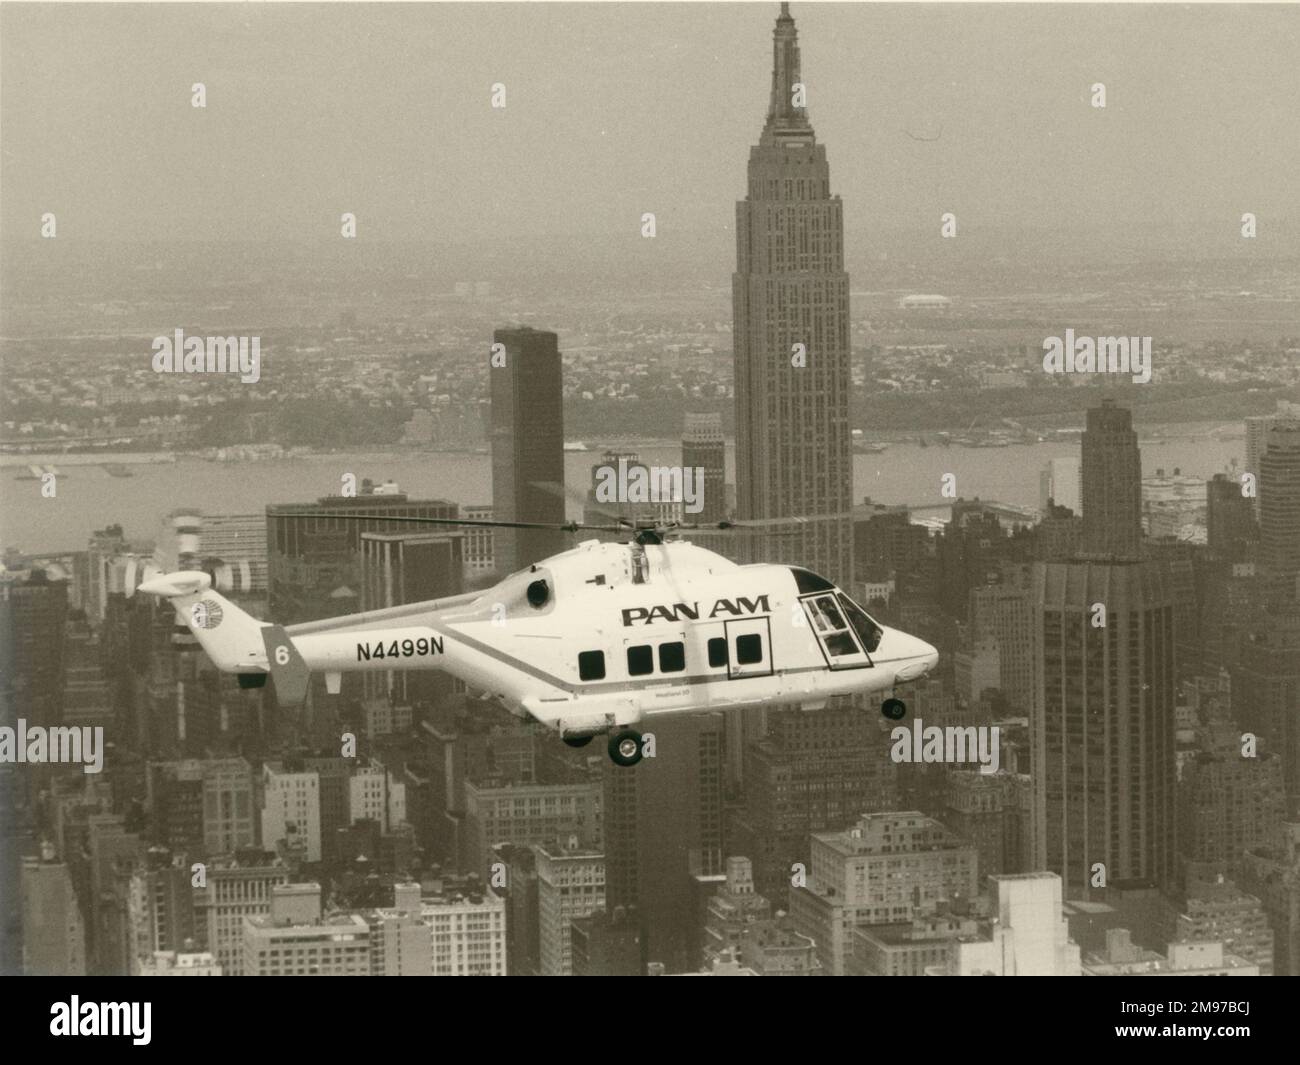 Westland 30, N4499N, von Pan am, über New York. Das Flugzeug verkehrte zwischen Manhattan (Battery Park/World Trade Center) und den Flughäfen John F. Kennedy und Newark. c. Dezember 1984. Stockfoto